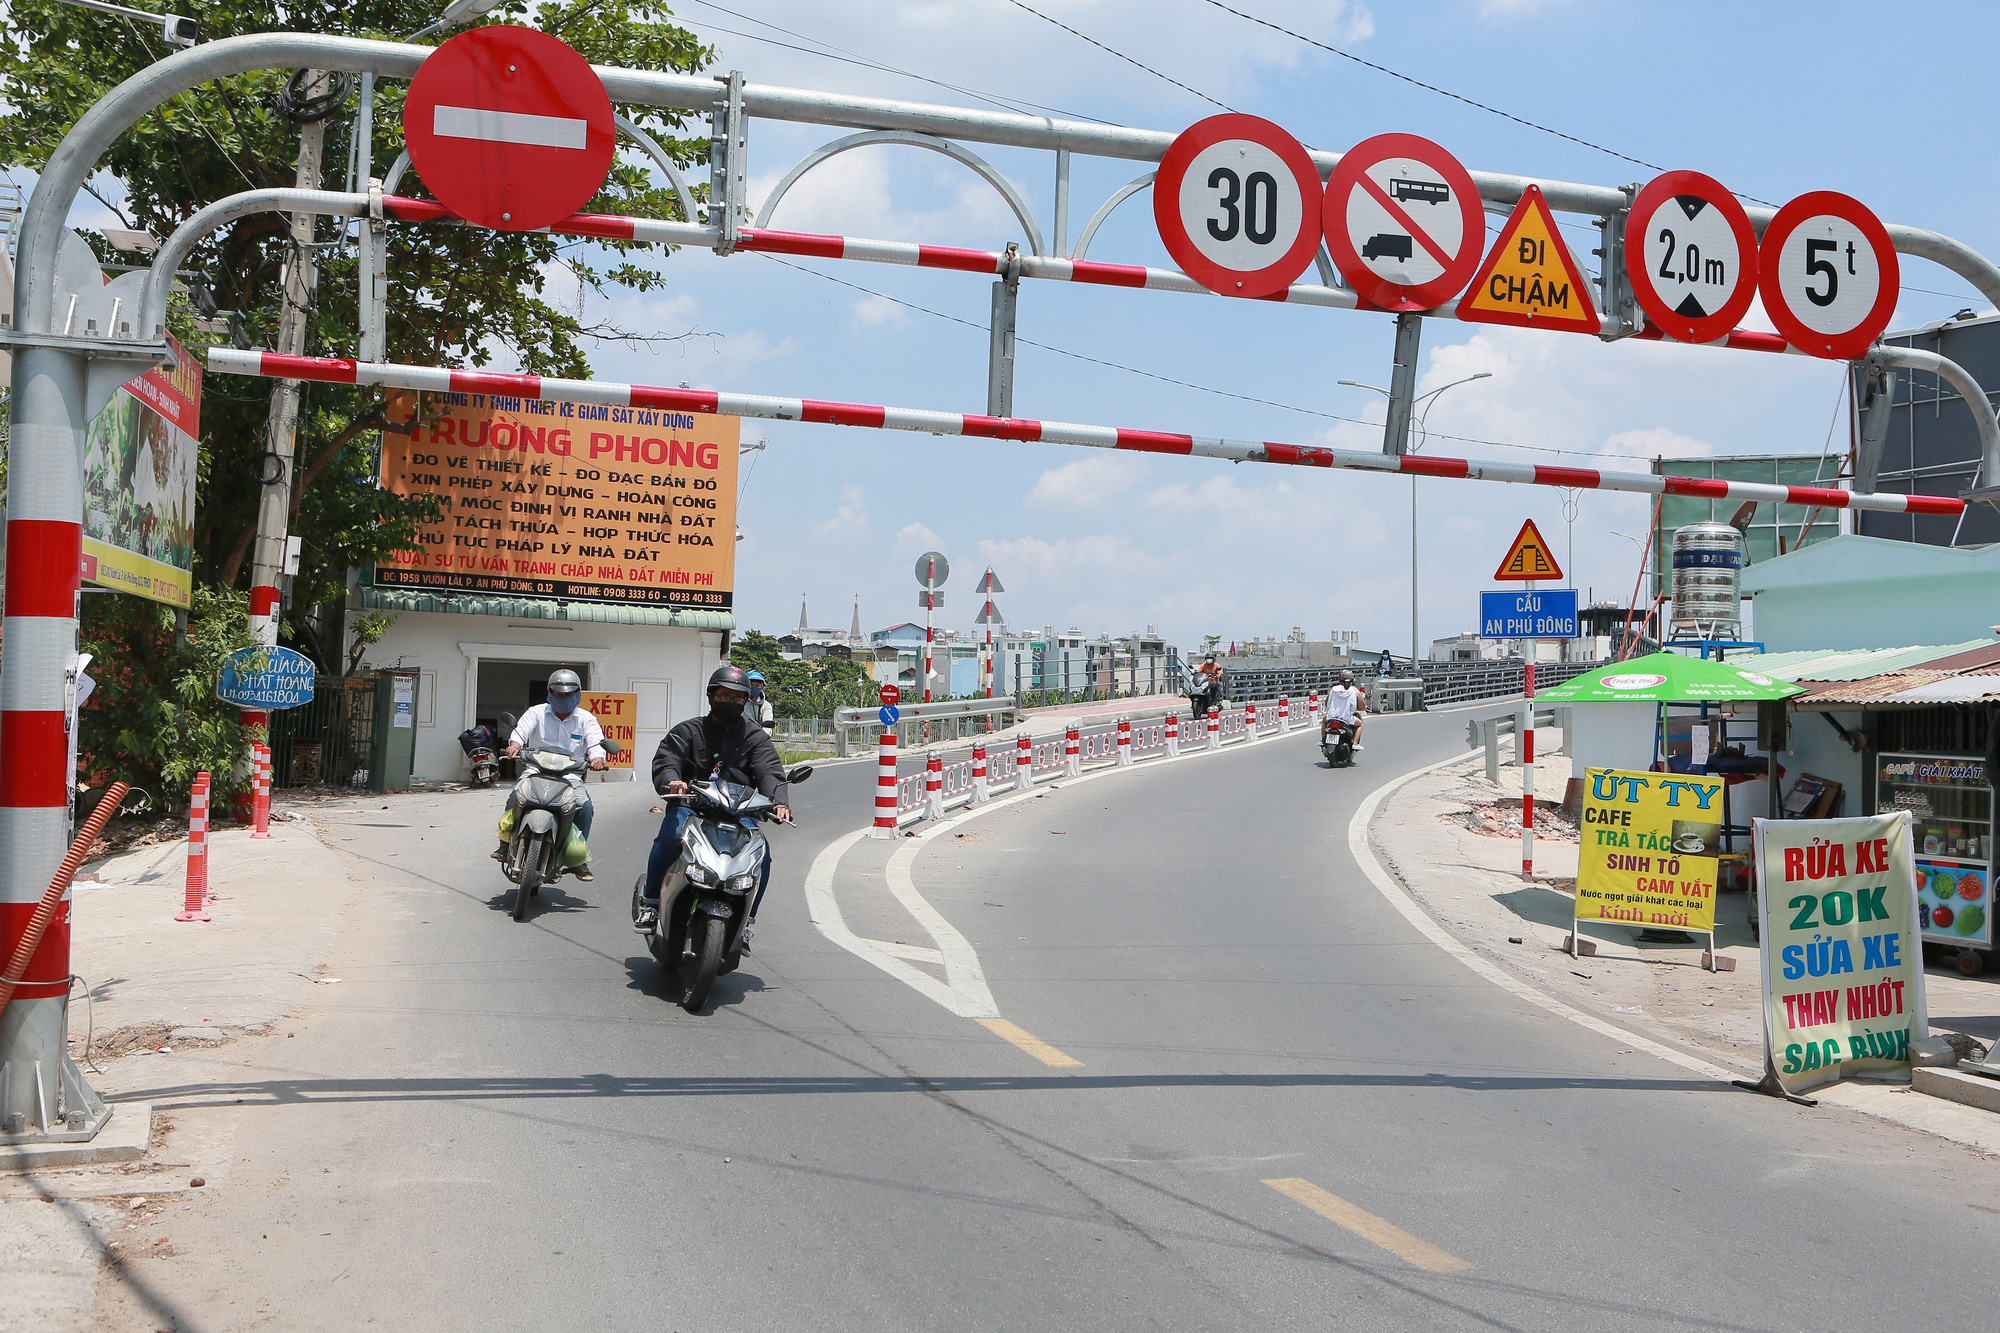 Giao thông tại TPHCM có đôi khi khá phức tạp, nhưng điều này cũng khiến thành phố trở nên sôi động và đầy màu sắc. Hãy cùng xem những hình ảnh đẹp về giao thông tại TPHCM và hiểu rõ hơn về nét độc đáo của một trong những đô thị lớn nhất Việt Nam.